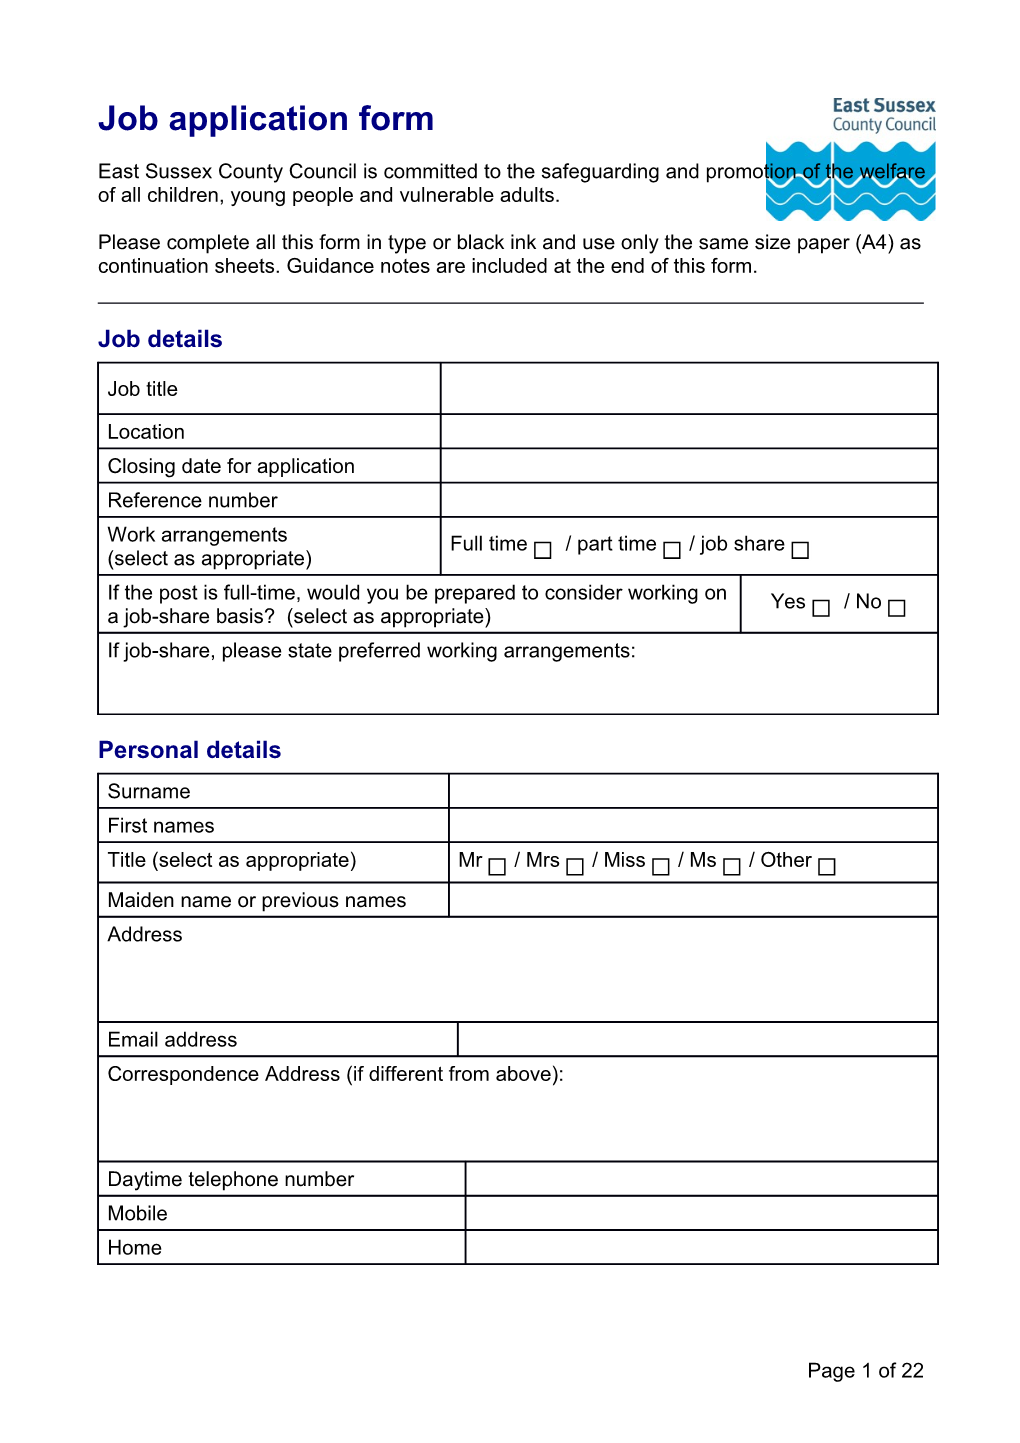 Job Application Form s19